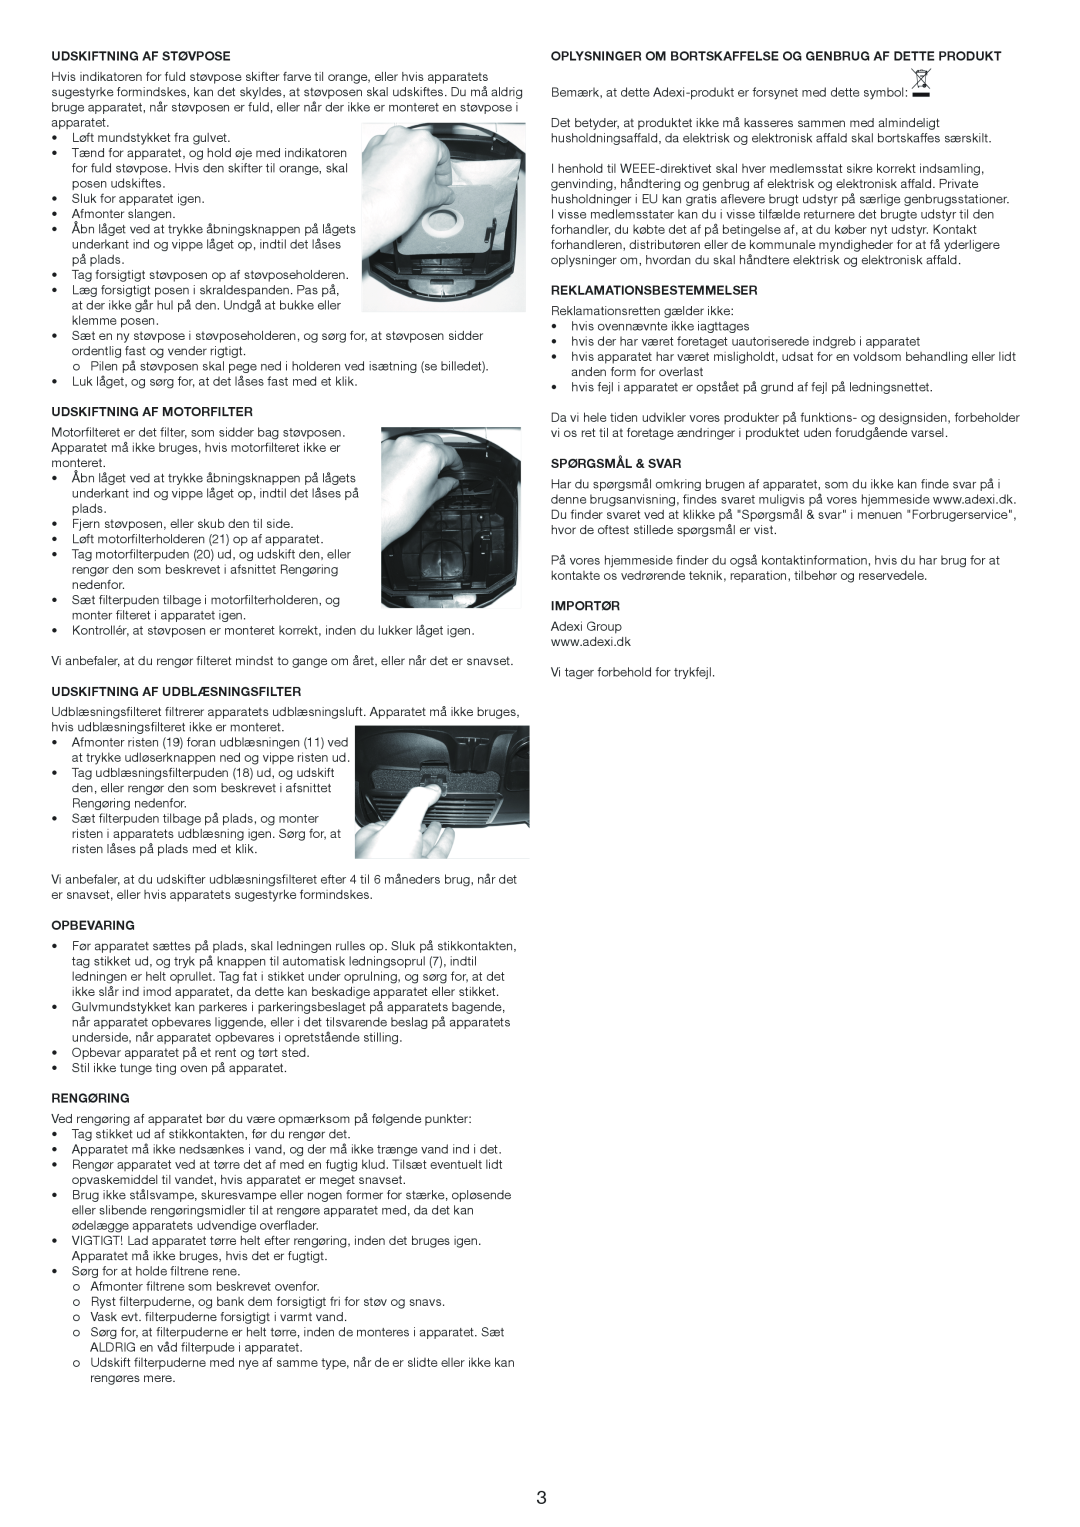 Melissa 640-206 manual Udskiftning Af Støvpose, Udskiftning Af Motorfilter, Udskiftning Af Udblæsningsfilter, Opbevaring 